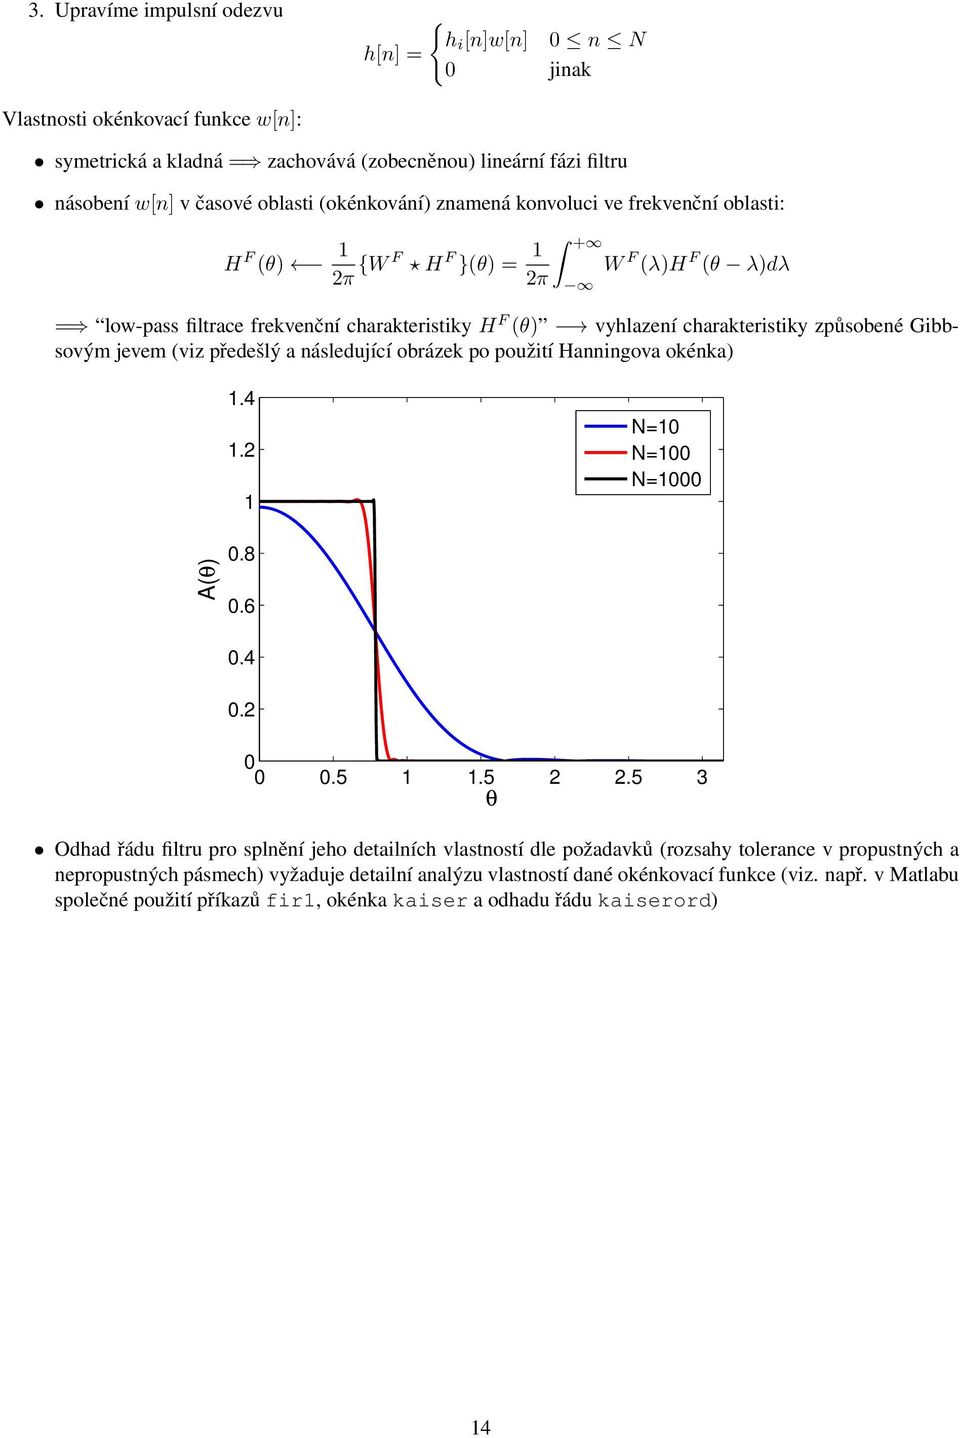 Gibbsovým jevem (viz předešlý a následující obrázek po použití Hanningova okénka) 1.4 1.2 1 N=10 N=100 N=1000 A(θ) 0.8 0.6 0.4 0.2 0 0 0.5 1 1.5 2 2.